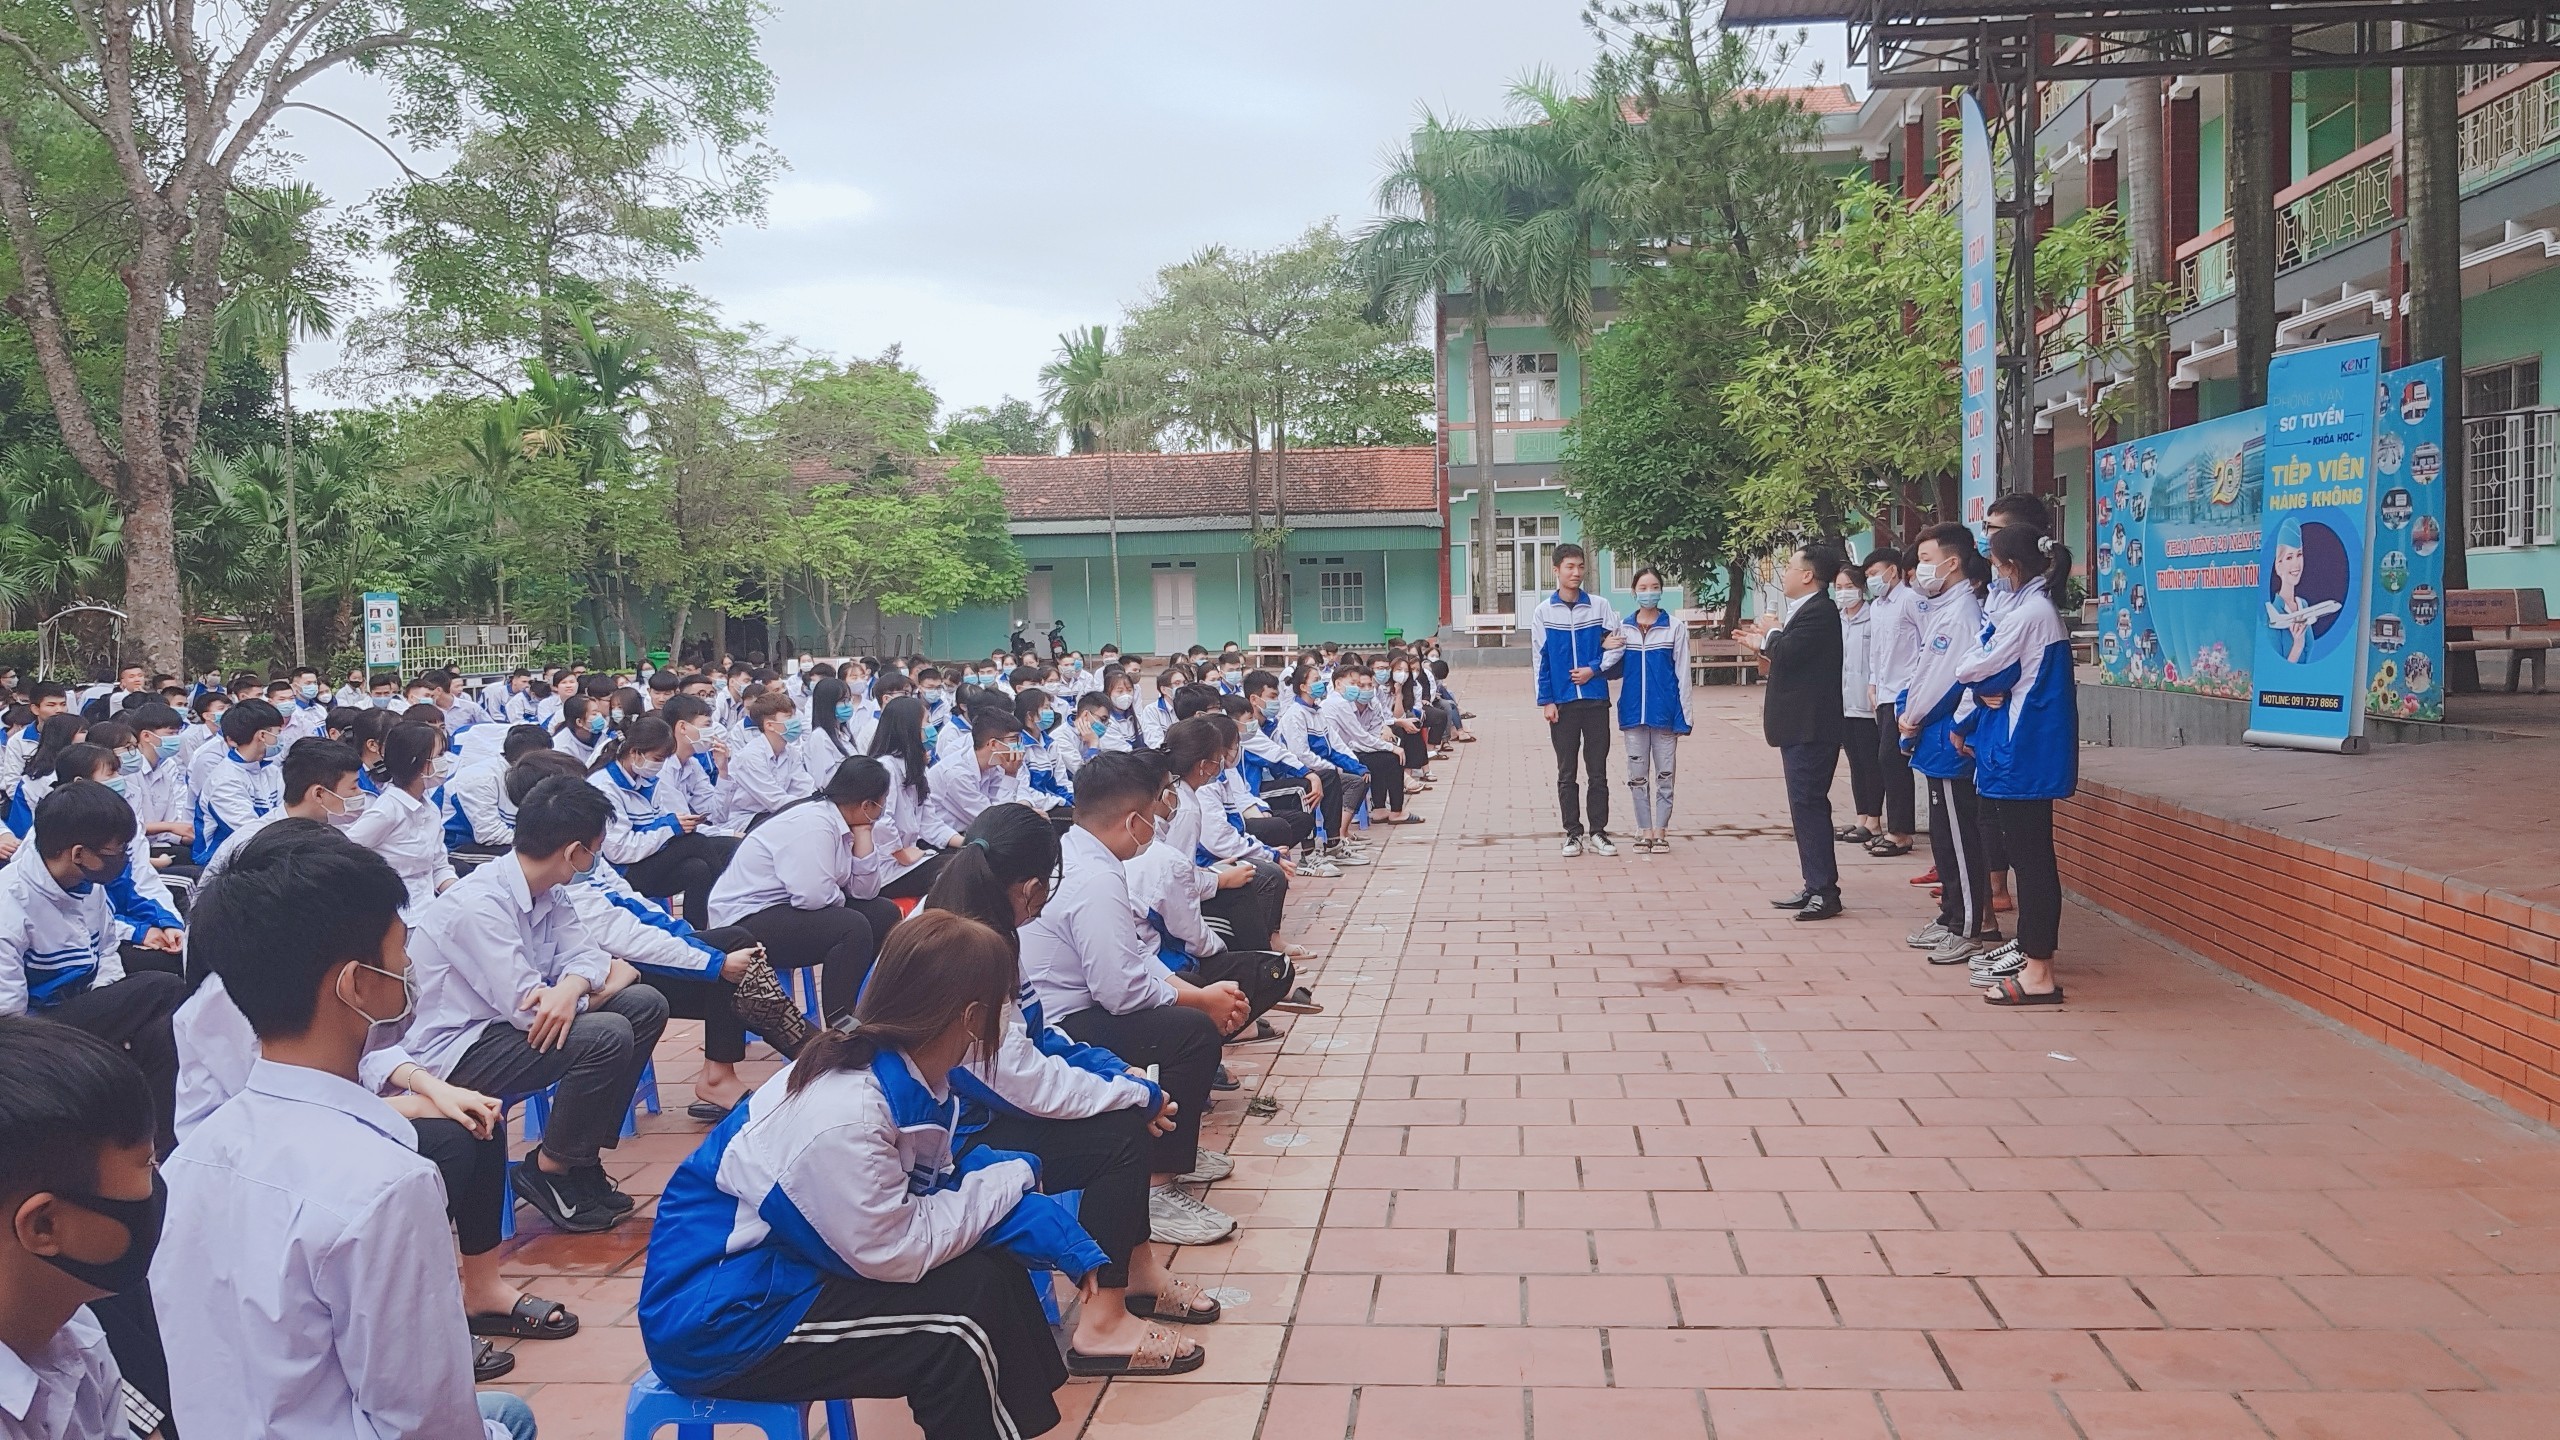 TTọa đàm tư vấn hướng nghiệp cung cấp thông tin thị trường lao động cho học sinh THPT tại Đông Triều, Quảng Ninh